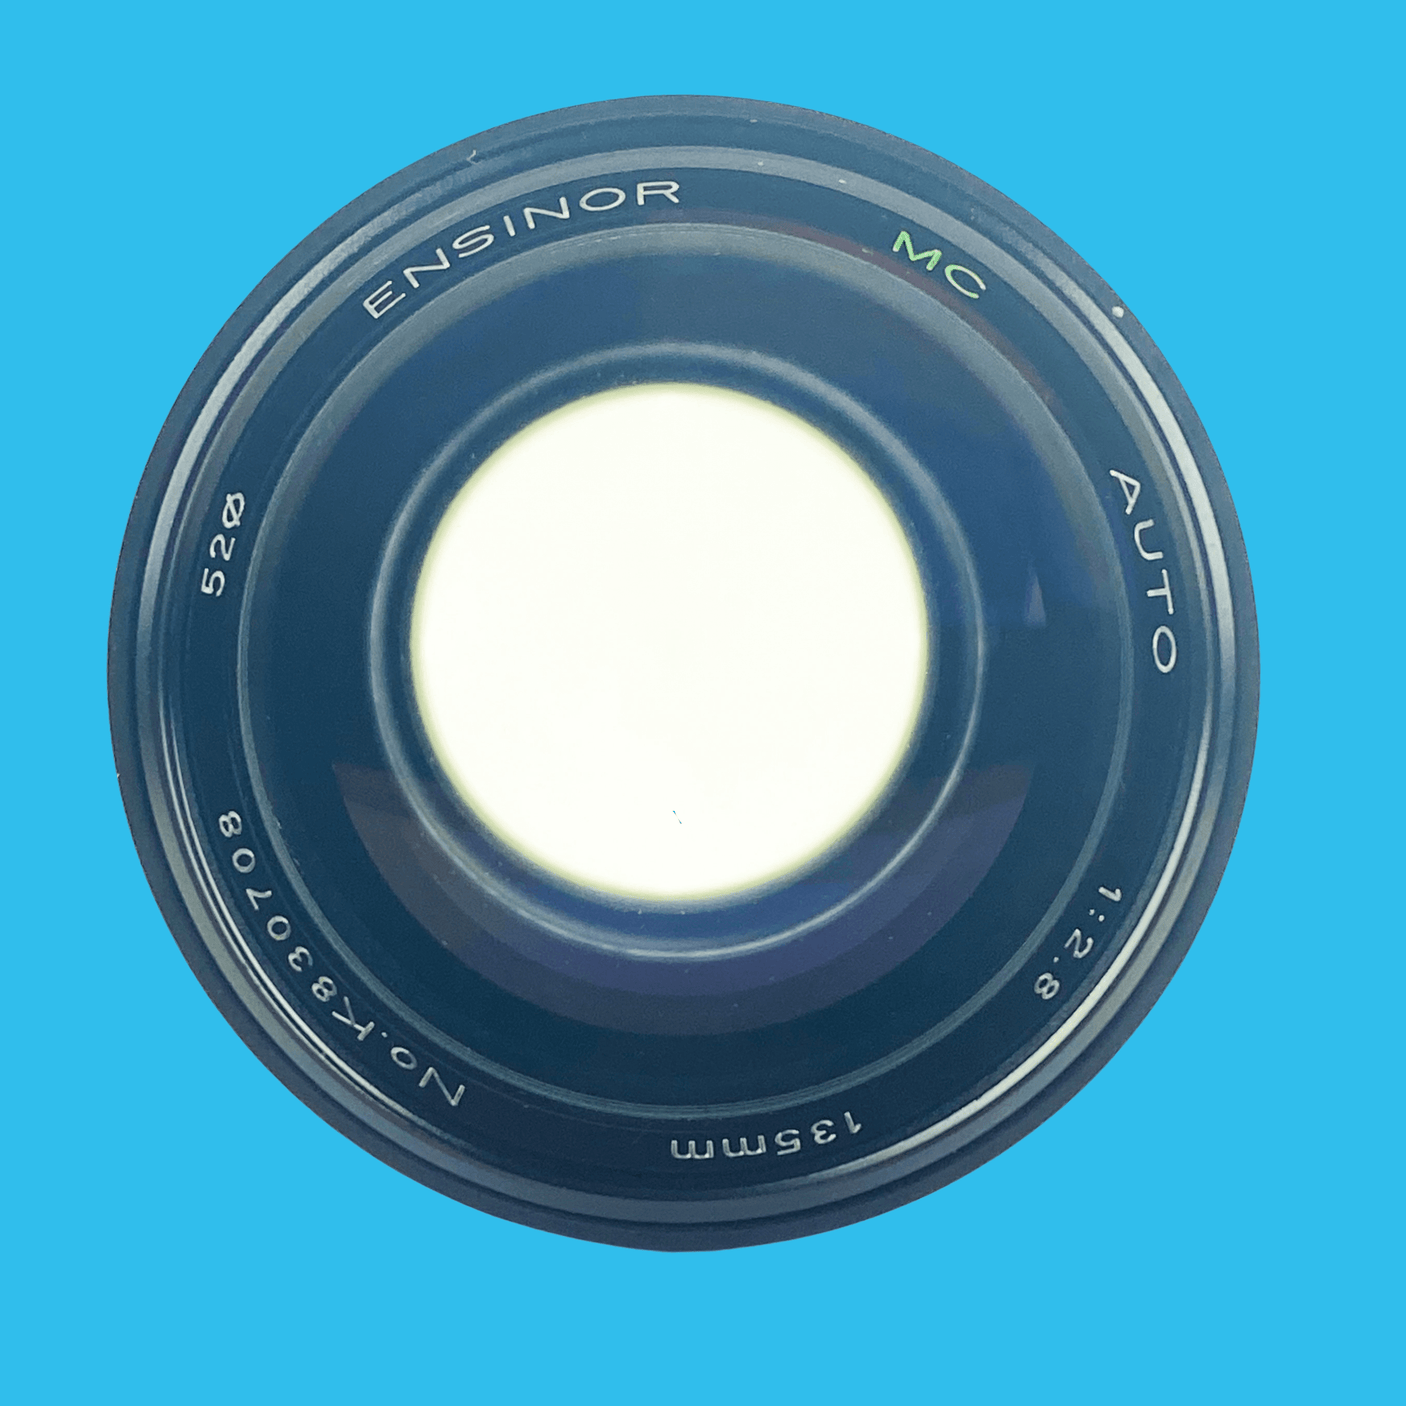 Ensinor Macro 135mm F2.8 Lens